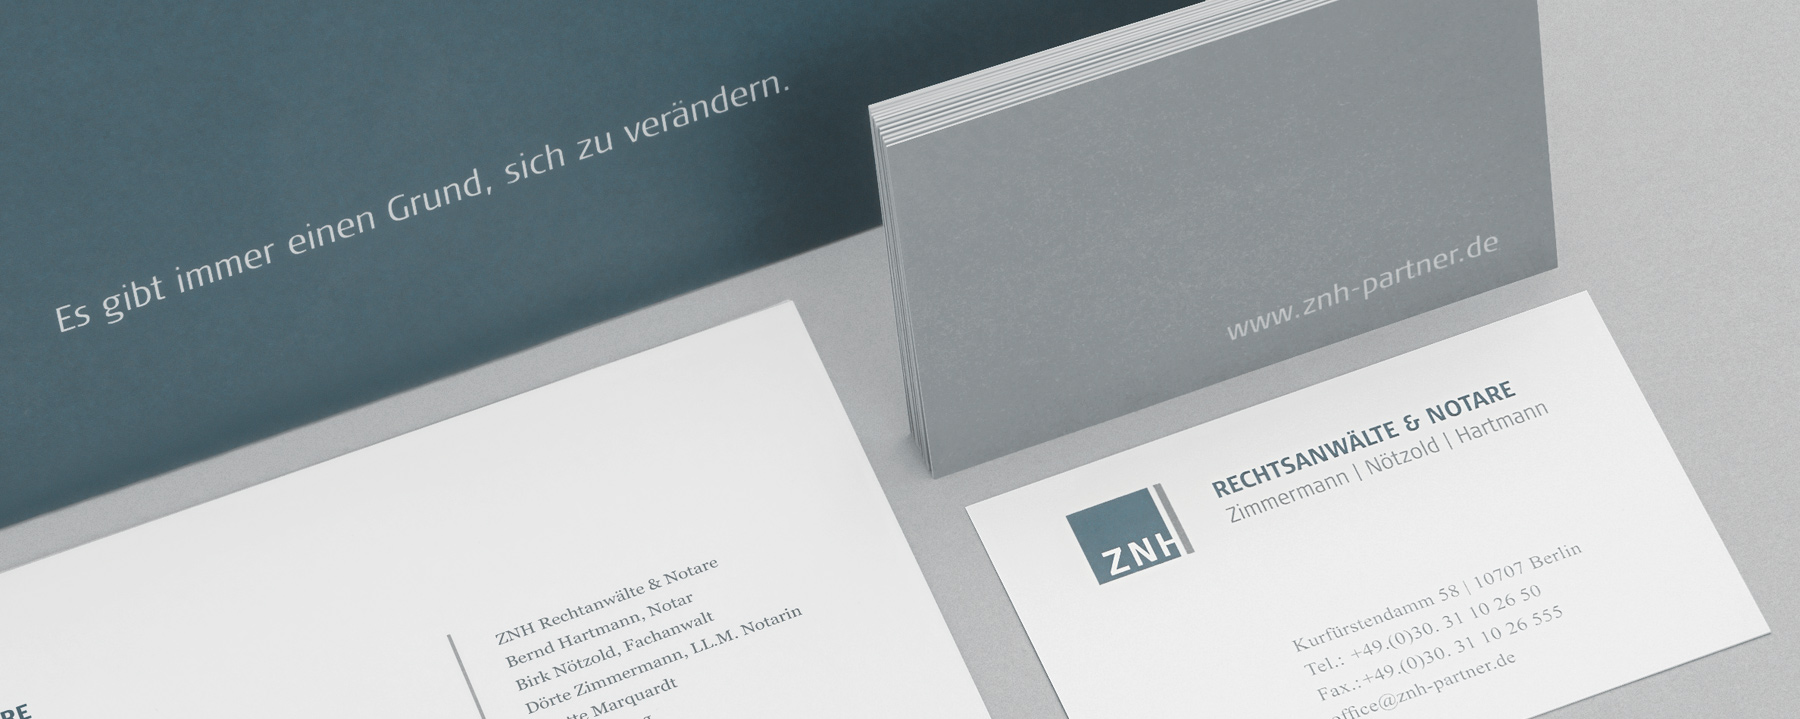 Geschäftsausstattung ZNH Rechtsanwälte & Notare | Berlin | by Ilyas Susever